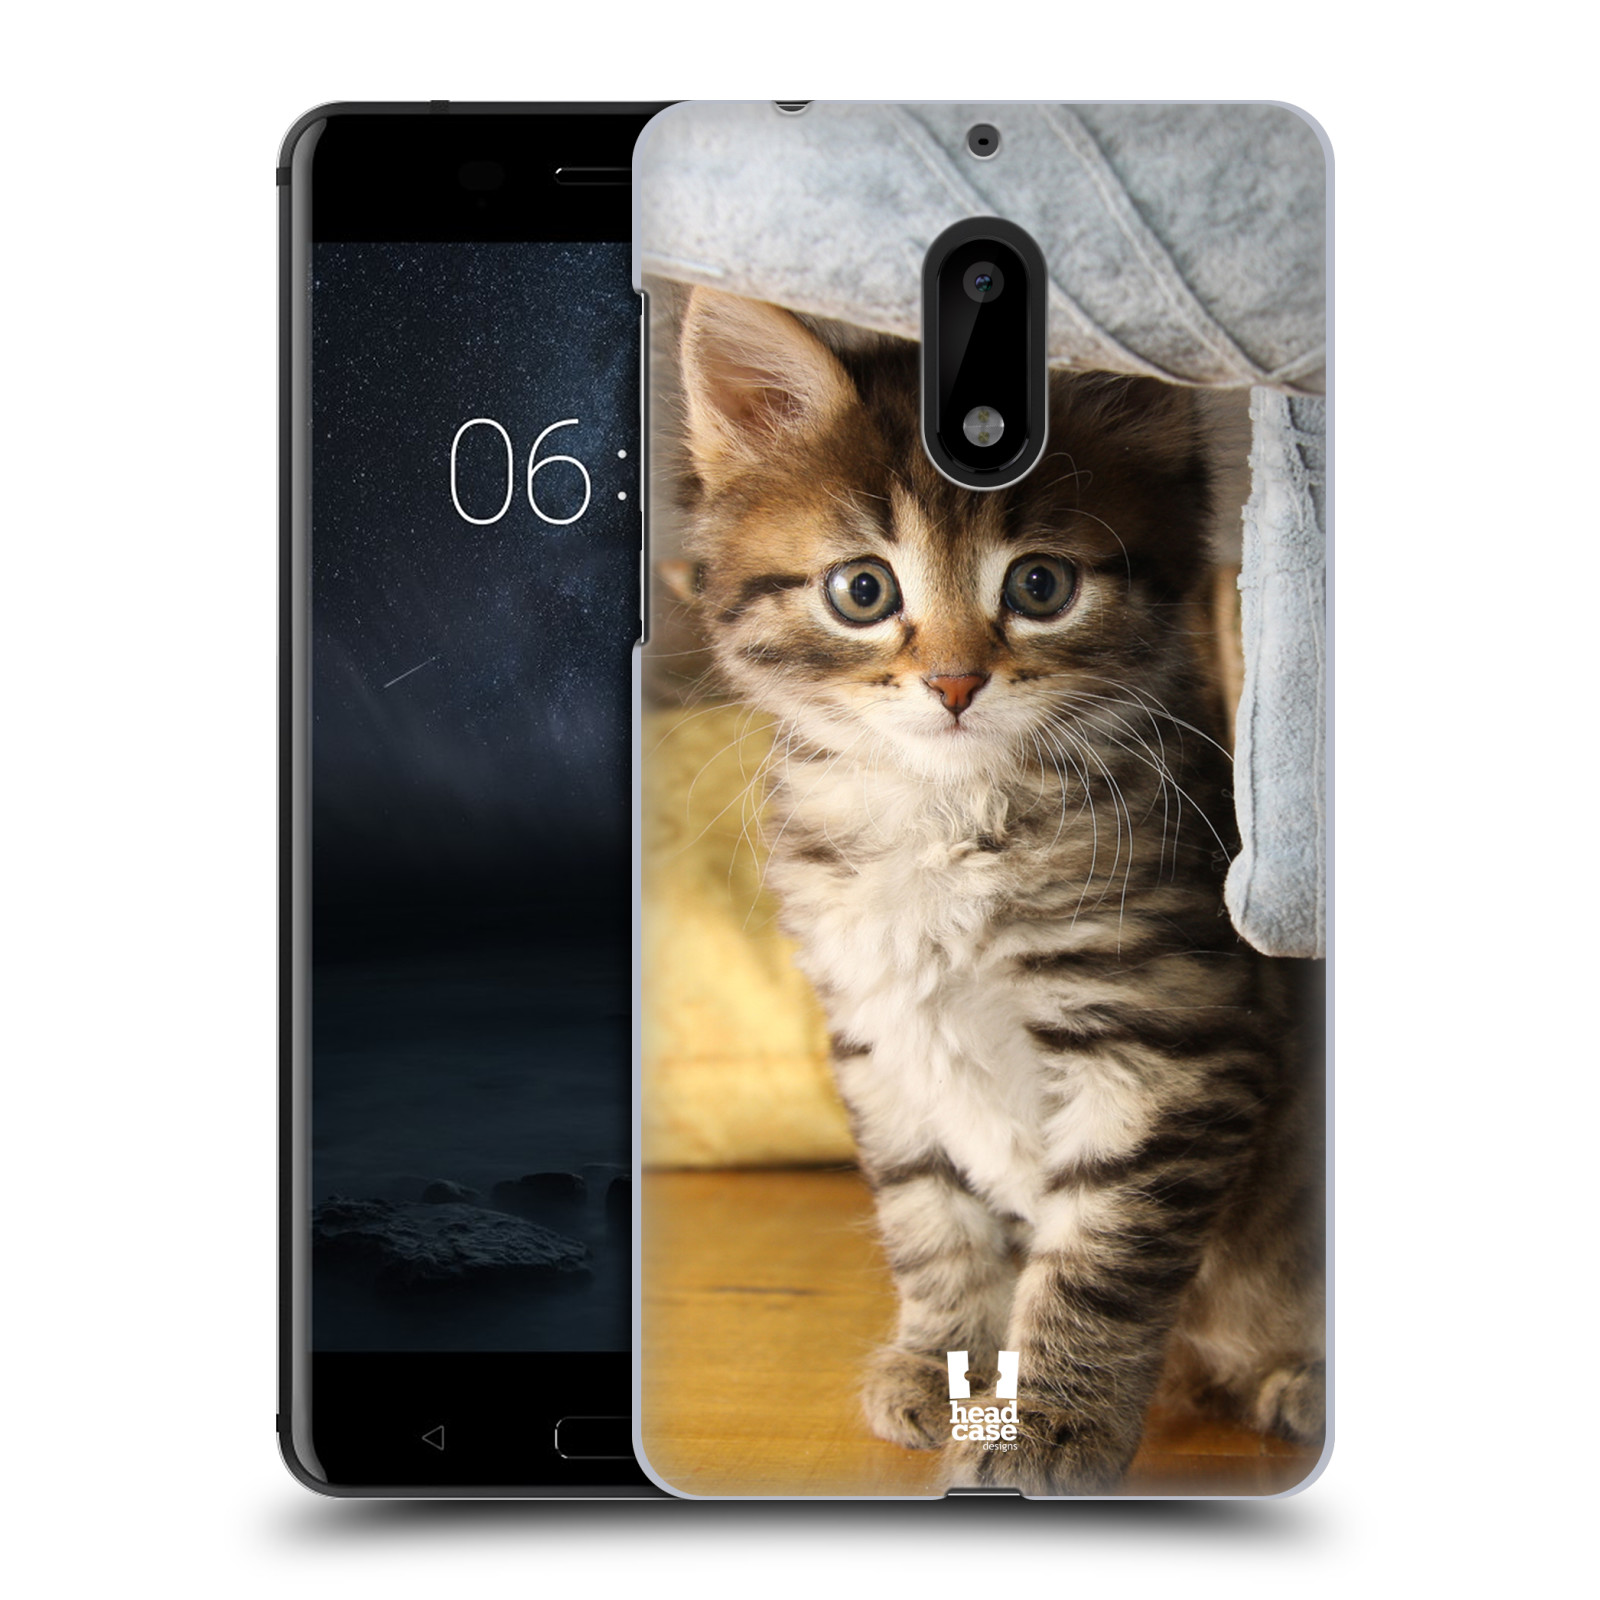 HEAD CASE plastový obal na mobil Nokia 6 vzor Kočičky koťata foto mourek